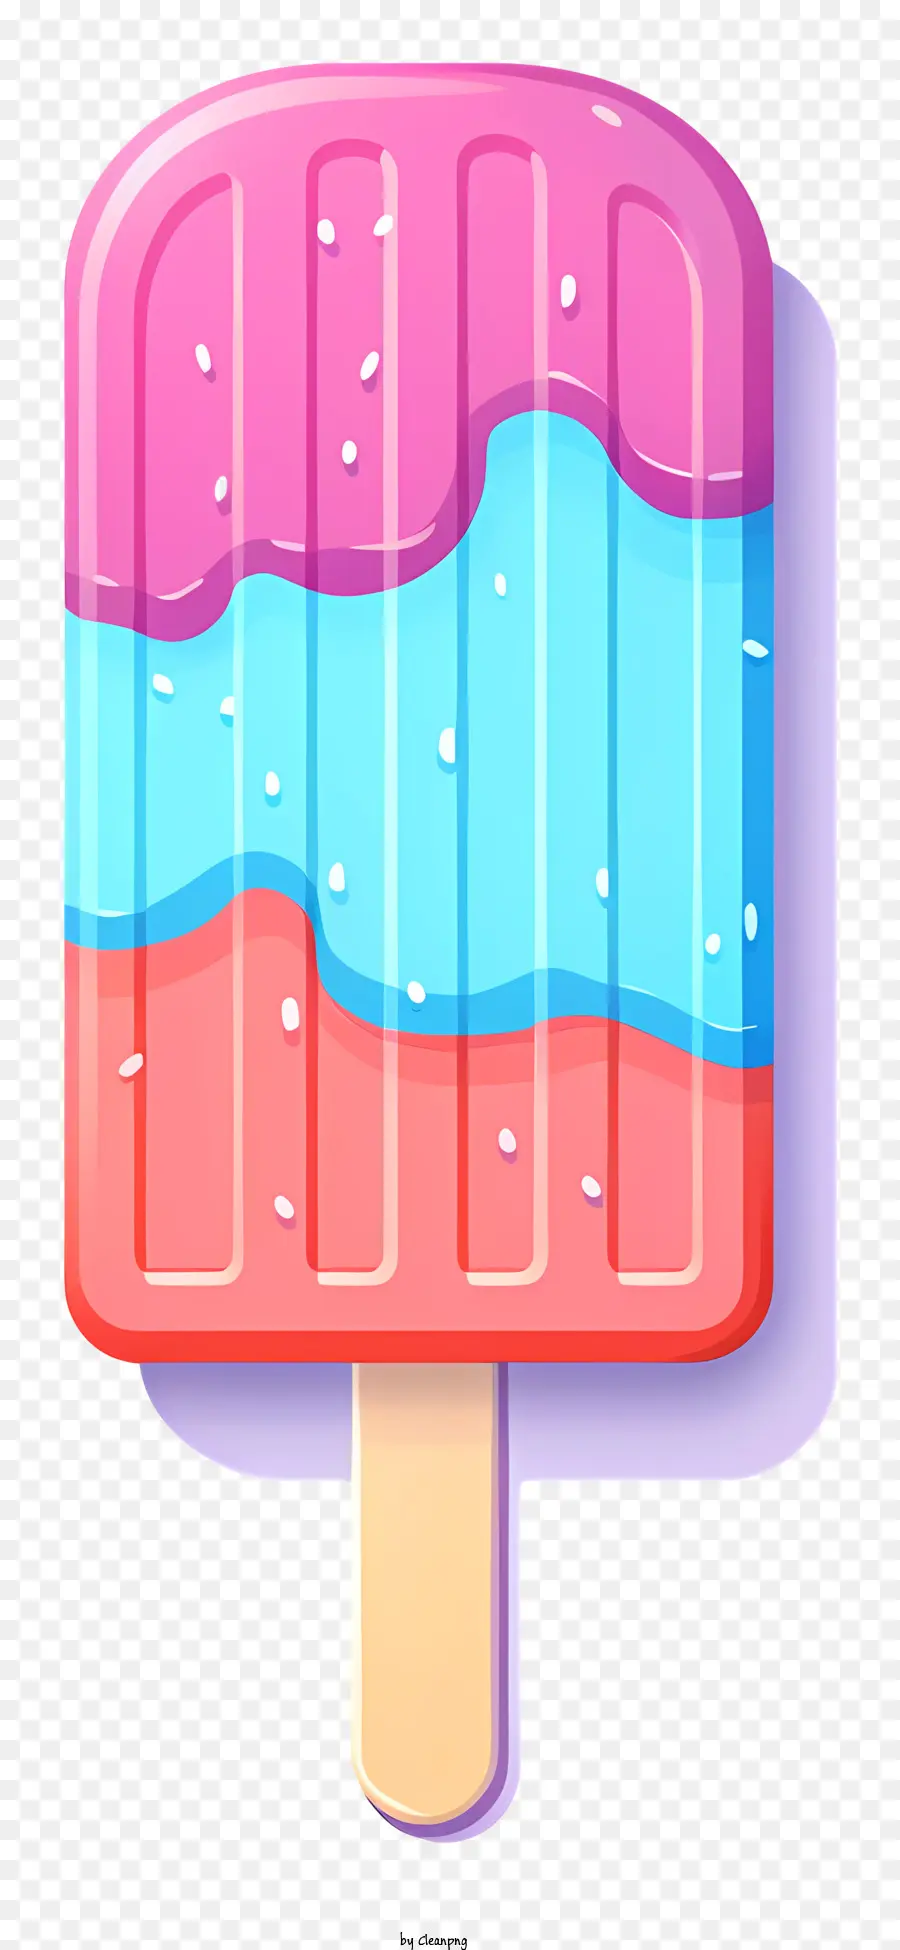 Eis - Vektor -Illustration von farbenfrohen Wirbel am Stick